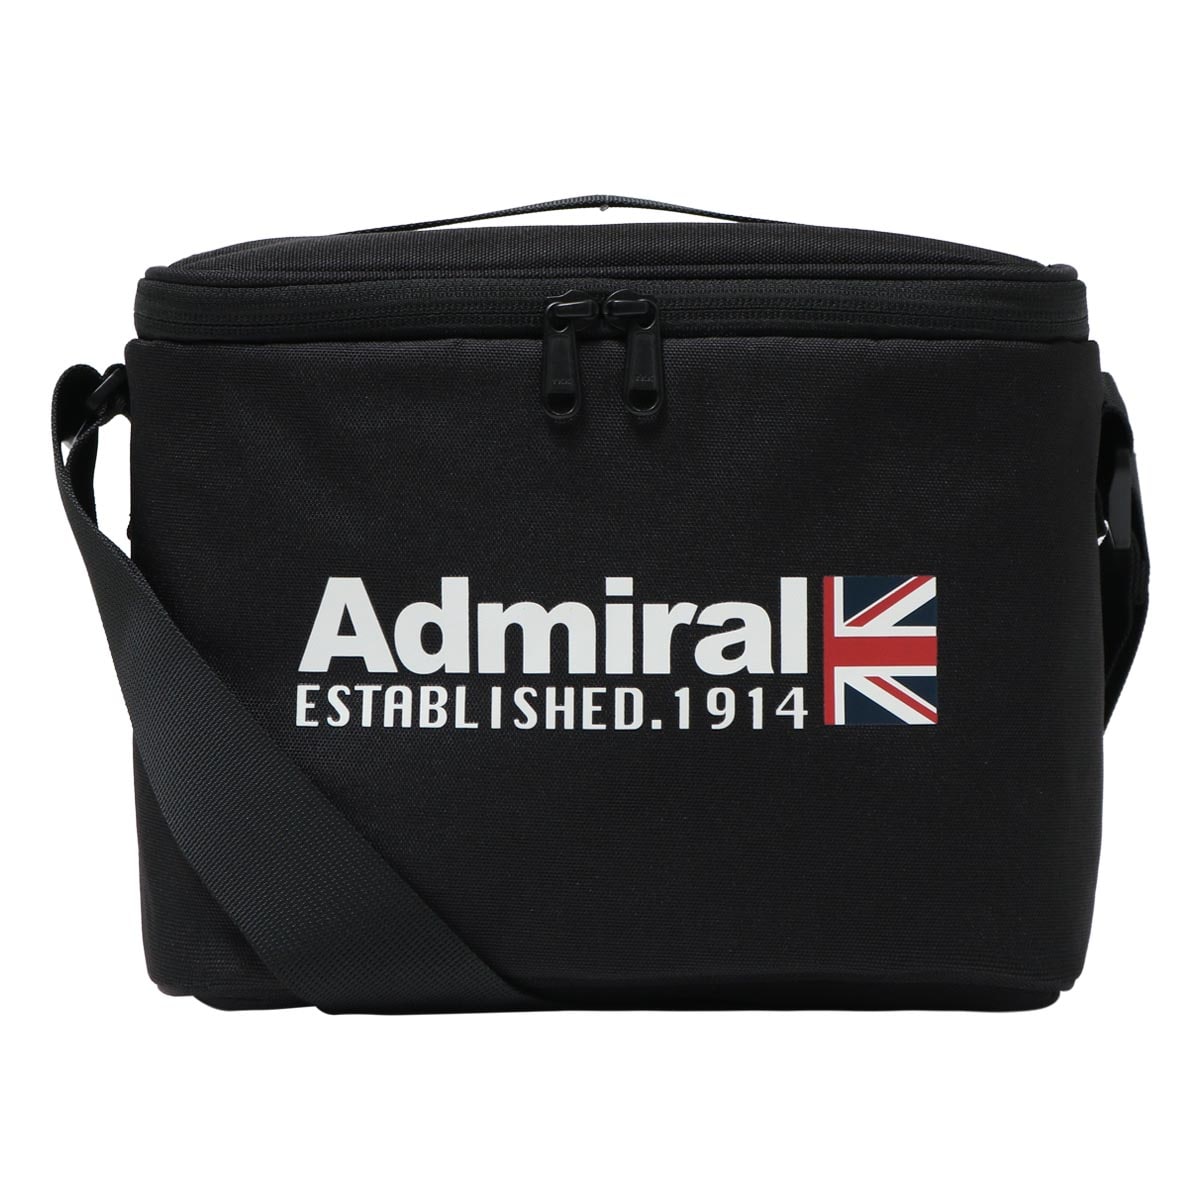 アドミラル ゴルフ クーラーバッグ クールバッグ 保冷バッグ メンズ ADMZ3BE7 Admiral GOLF ショルダーバッグ カートバッグ  スポーツ